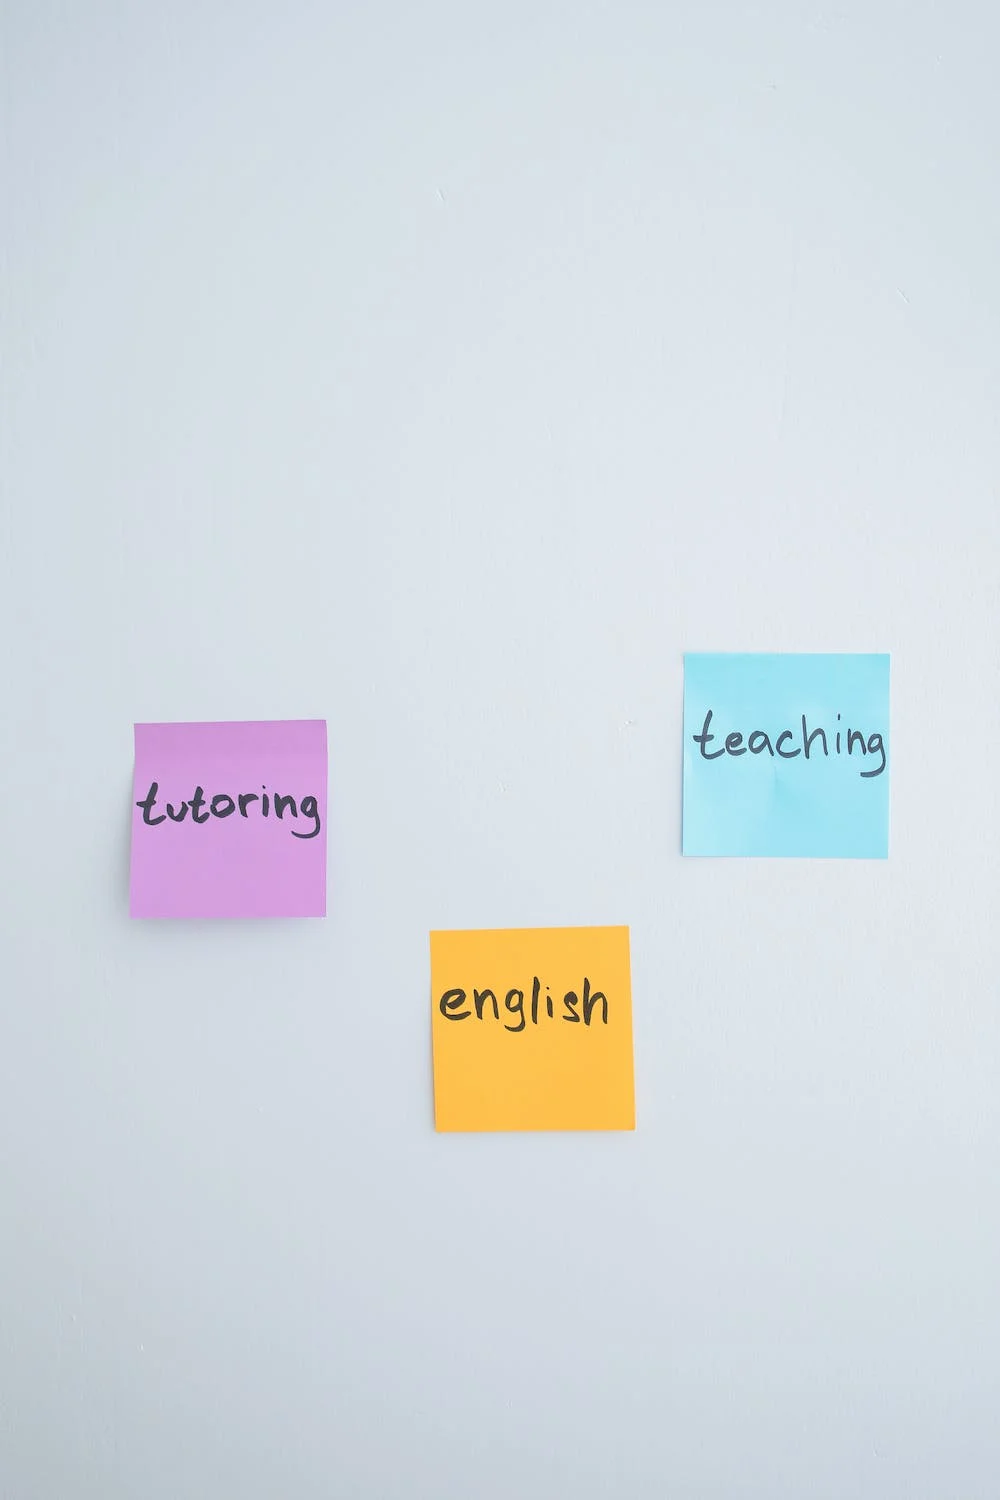 tutoring teaching english